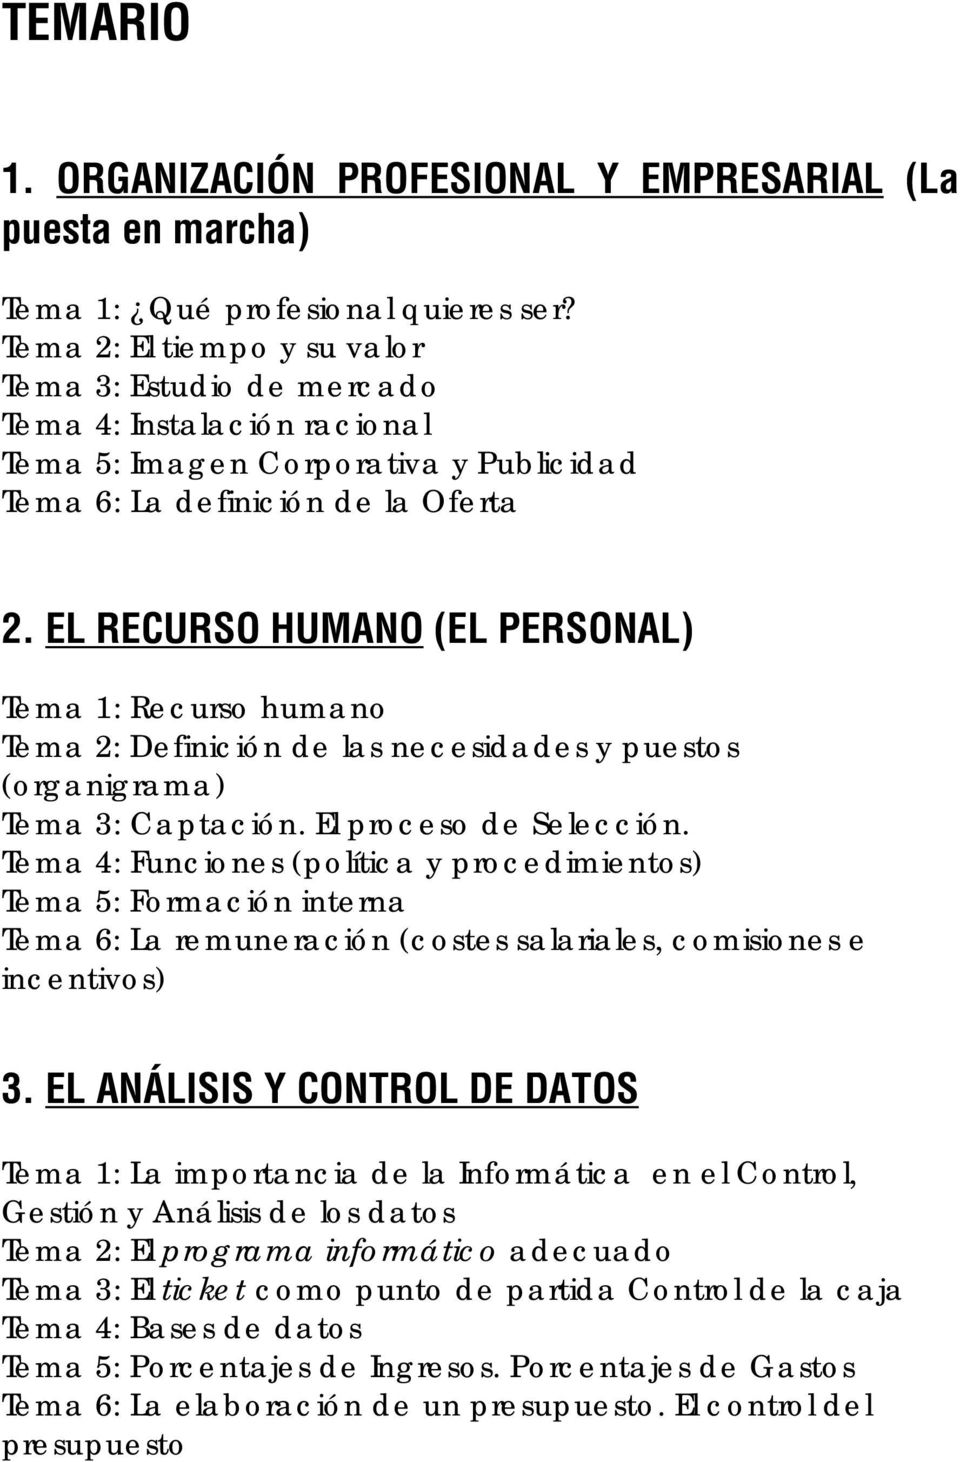 EL RECURSO HUMANO (EL PERSONAL) Tema 1: Recurso humano Tema 2: Definición de las necesidades y puestos (organigrama) Tema 3: Captación. El proceso de Selección.